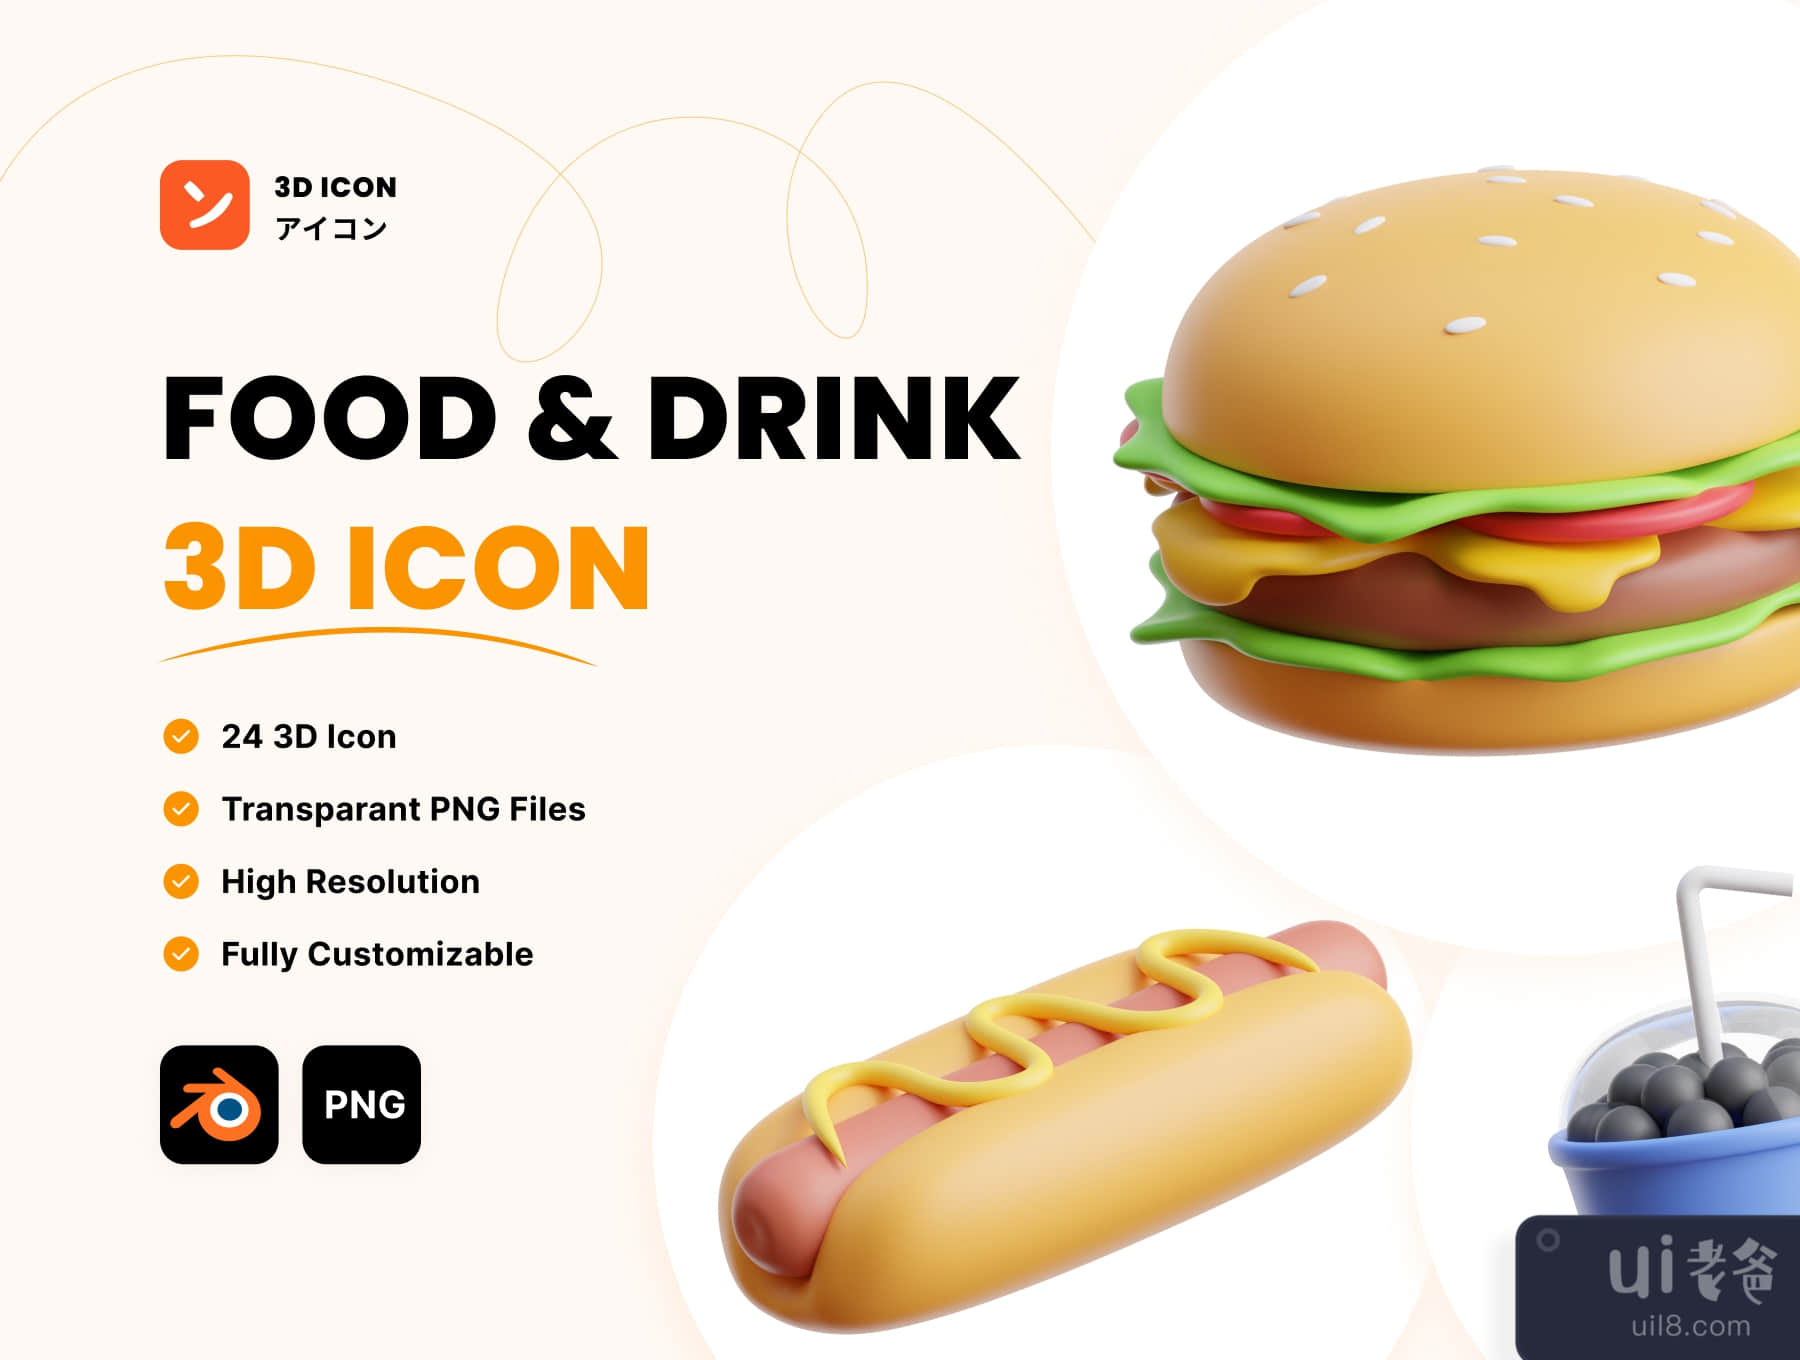 食品&饮料3D图标 (Food & Drink 3D Icon)插图